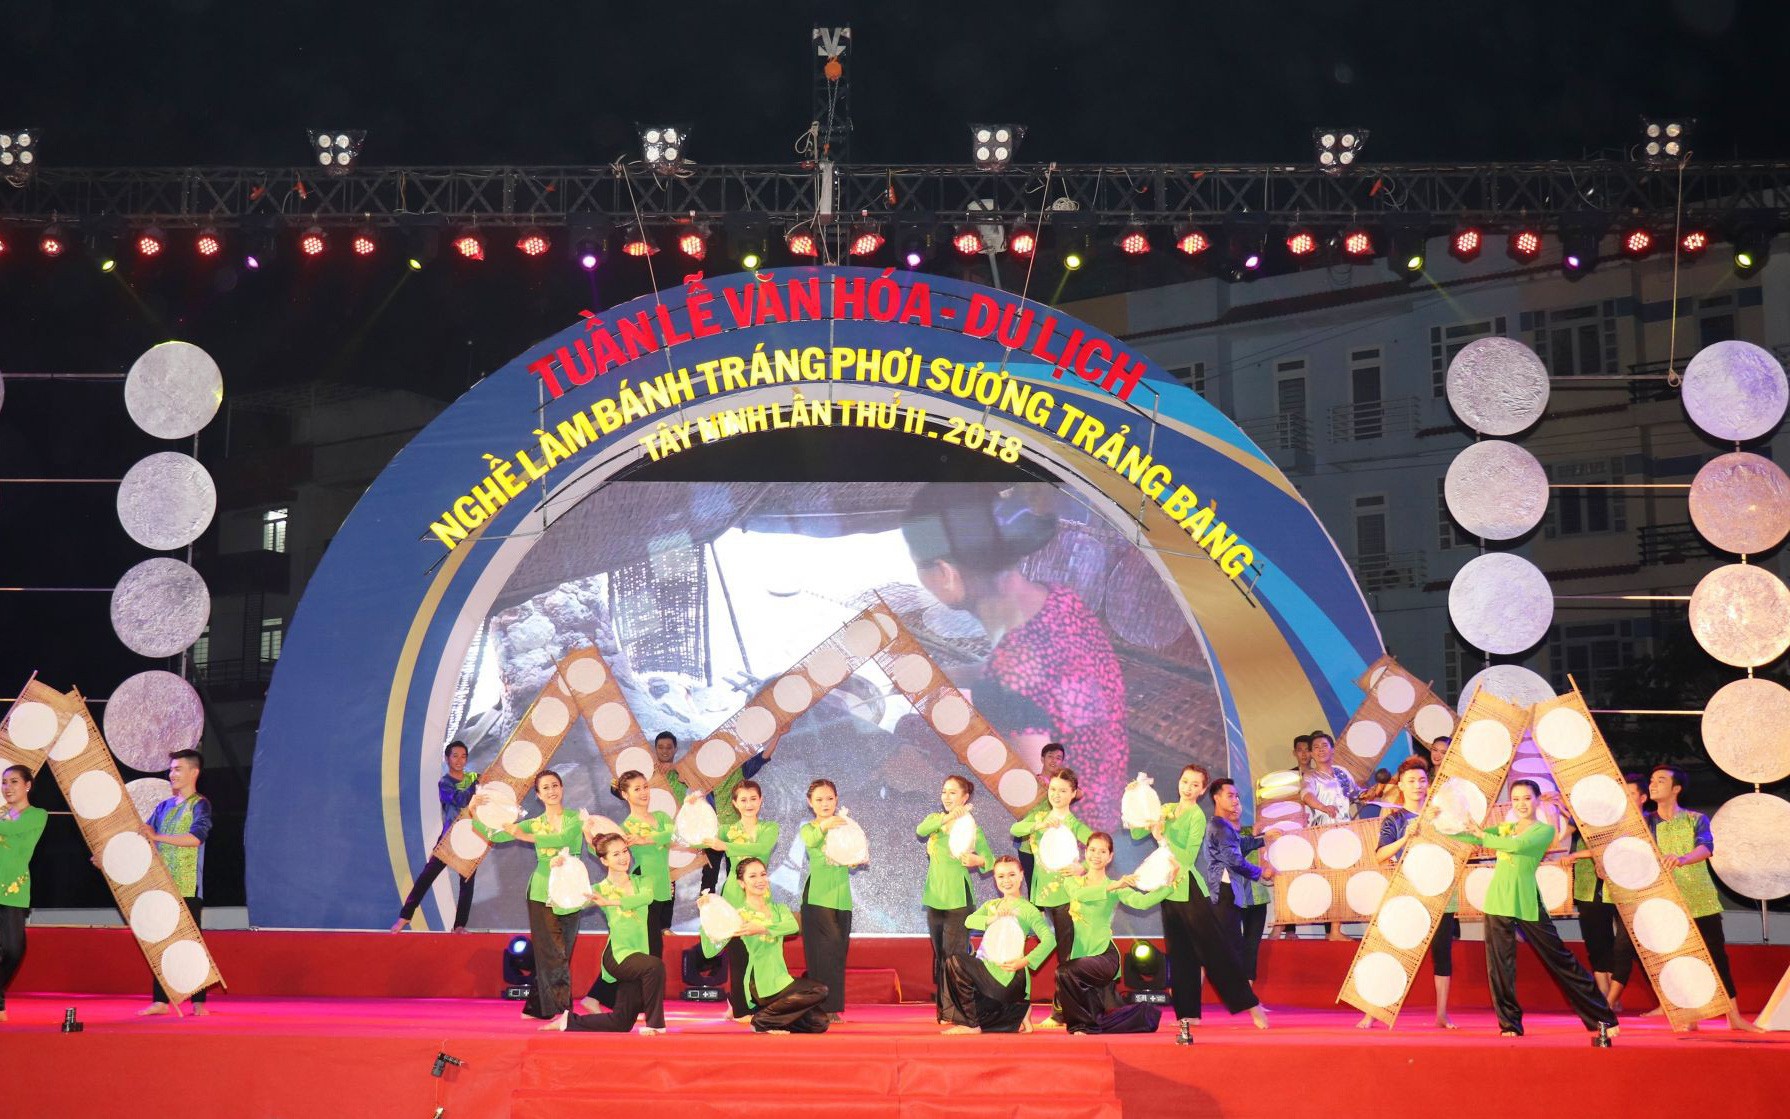 Tây Ninh: Duy trì tổ chức Lễ hội Văn hóa – Du lịch Nghề làm bánh tráng phơi sương Trảng Bàng